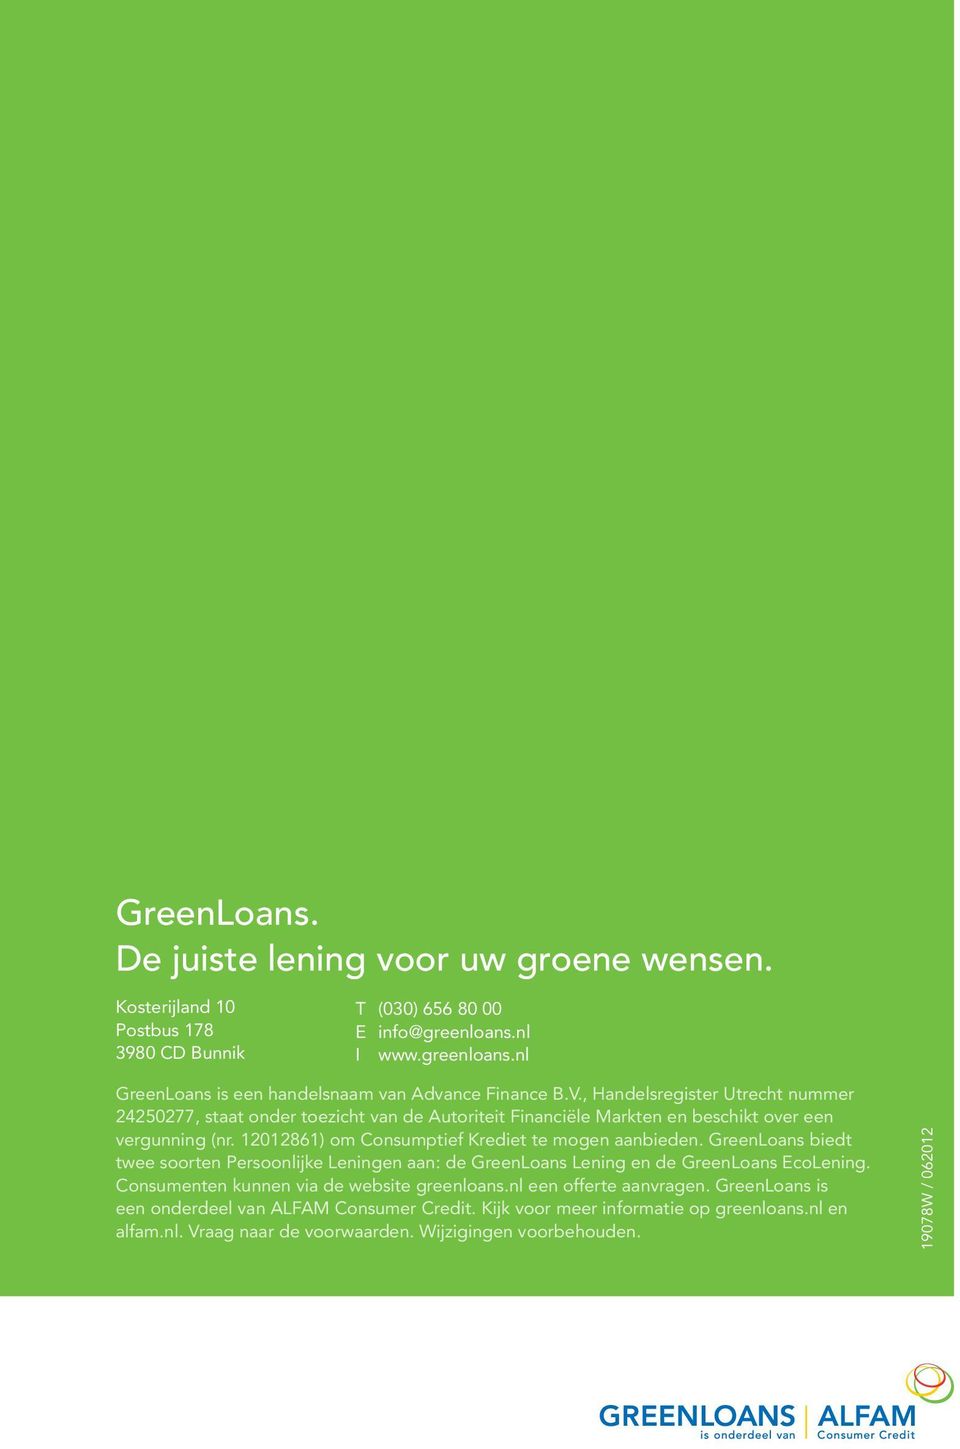 12012861) om Consumptief Krediet te mogen aanbieden. GreenLoans biedt twee soorten Persoonlijke Leningen aan: de GreenLoans Lening en de GreenLoans EcoLening.